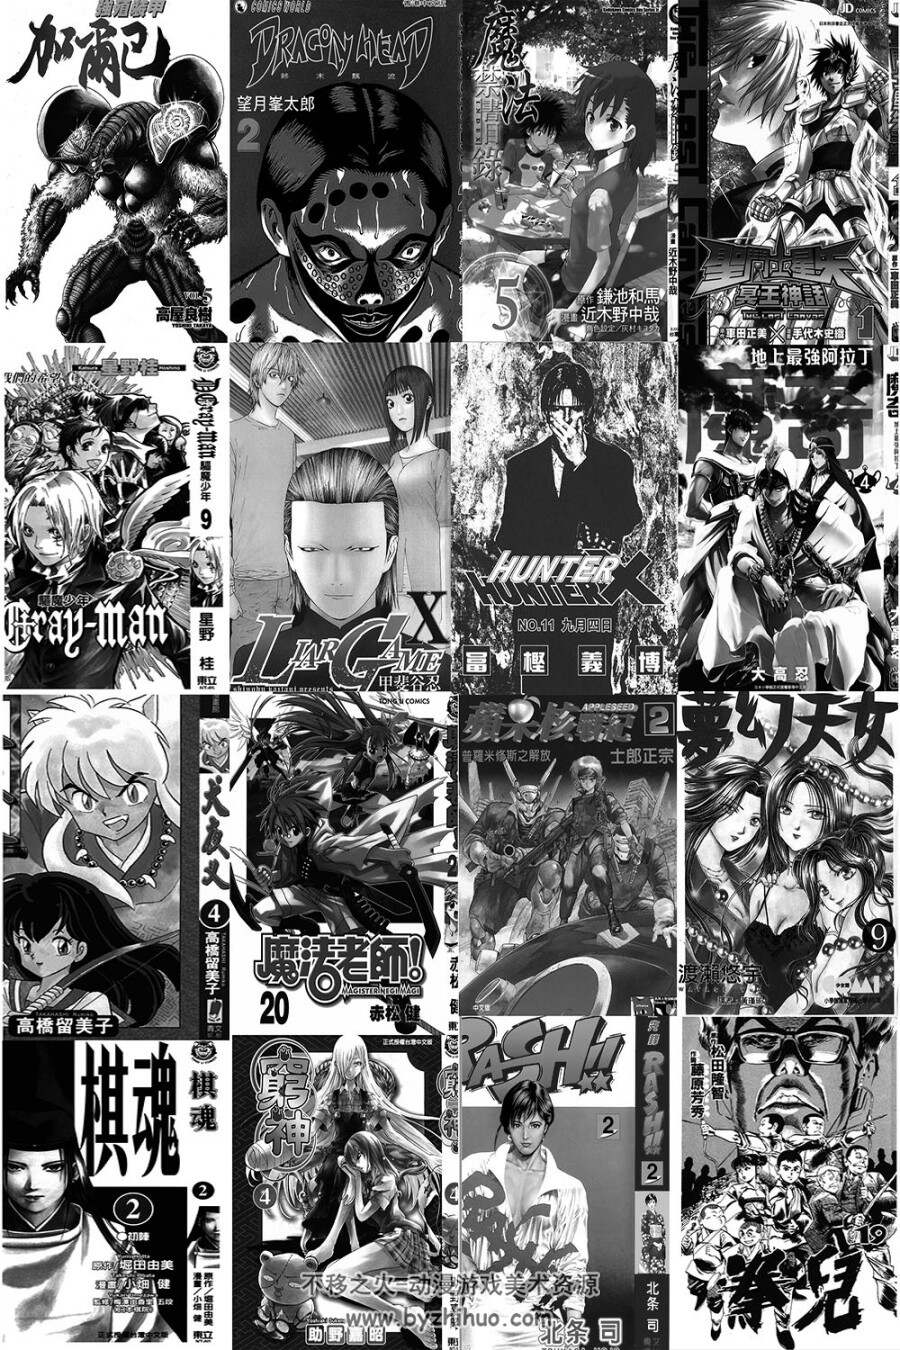 中长篇日系漫画(一般向) 漫画合集第五弹 共30部（300多部陆续更新~）